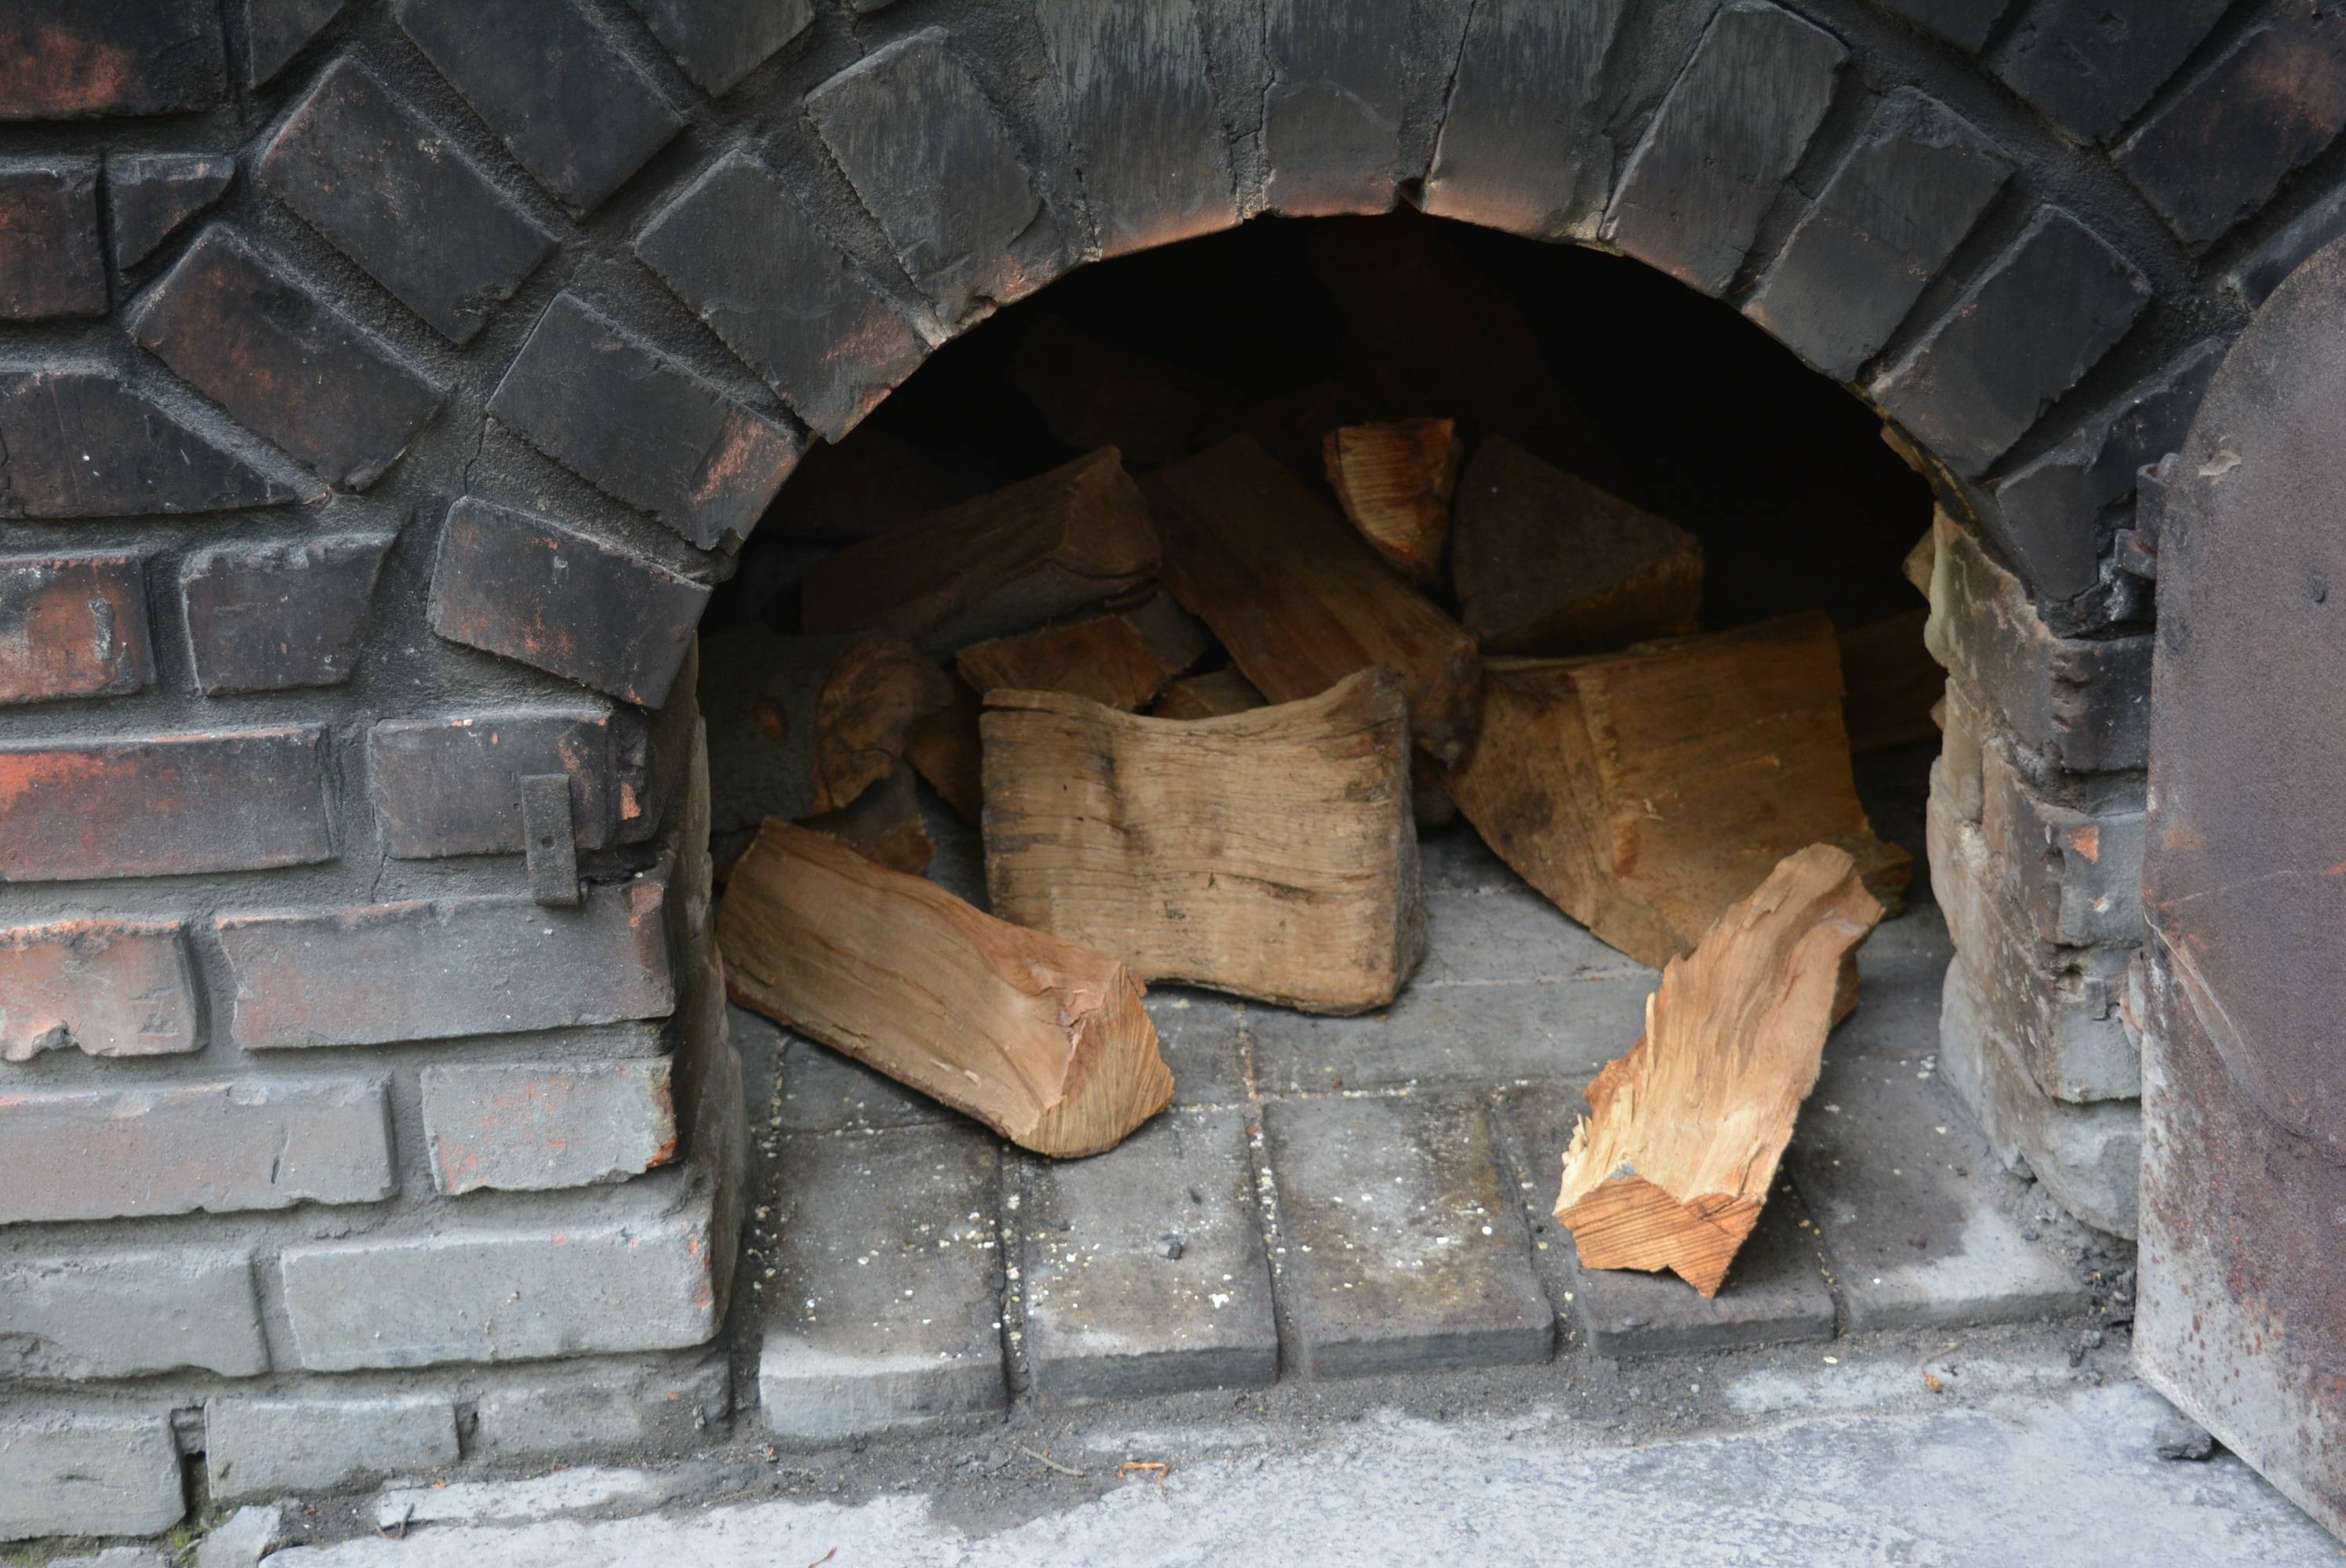 Технология процесса: как правильно топить печь дровами